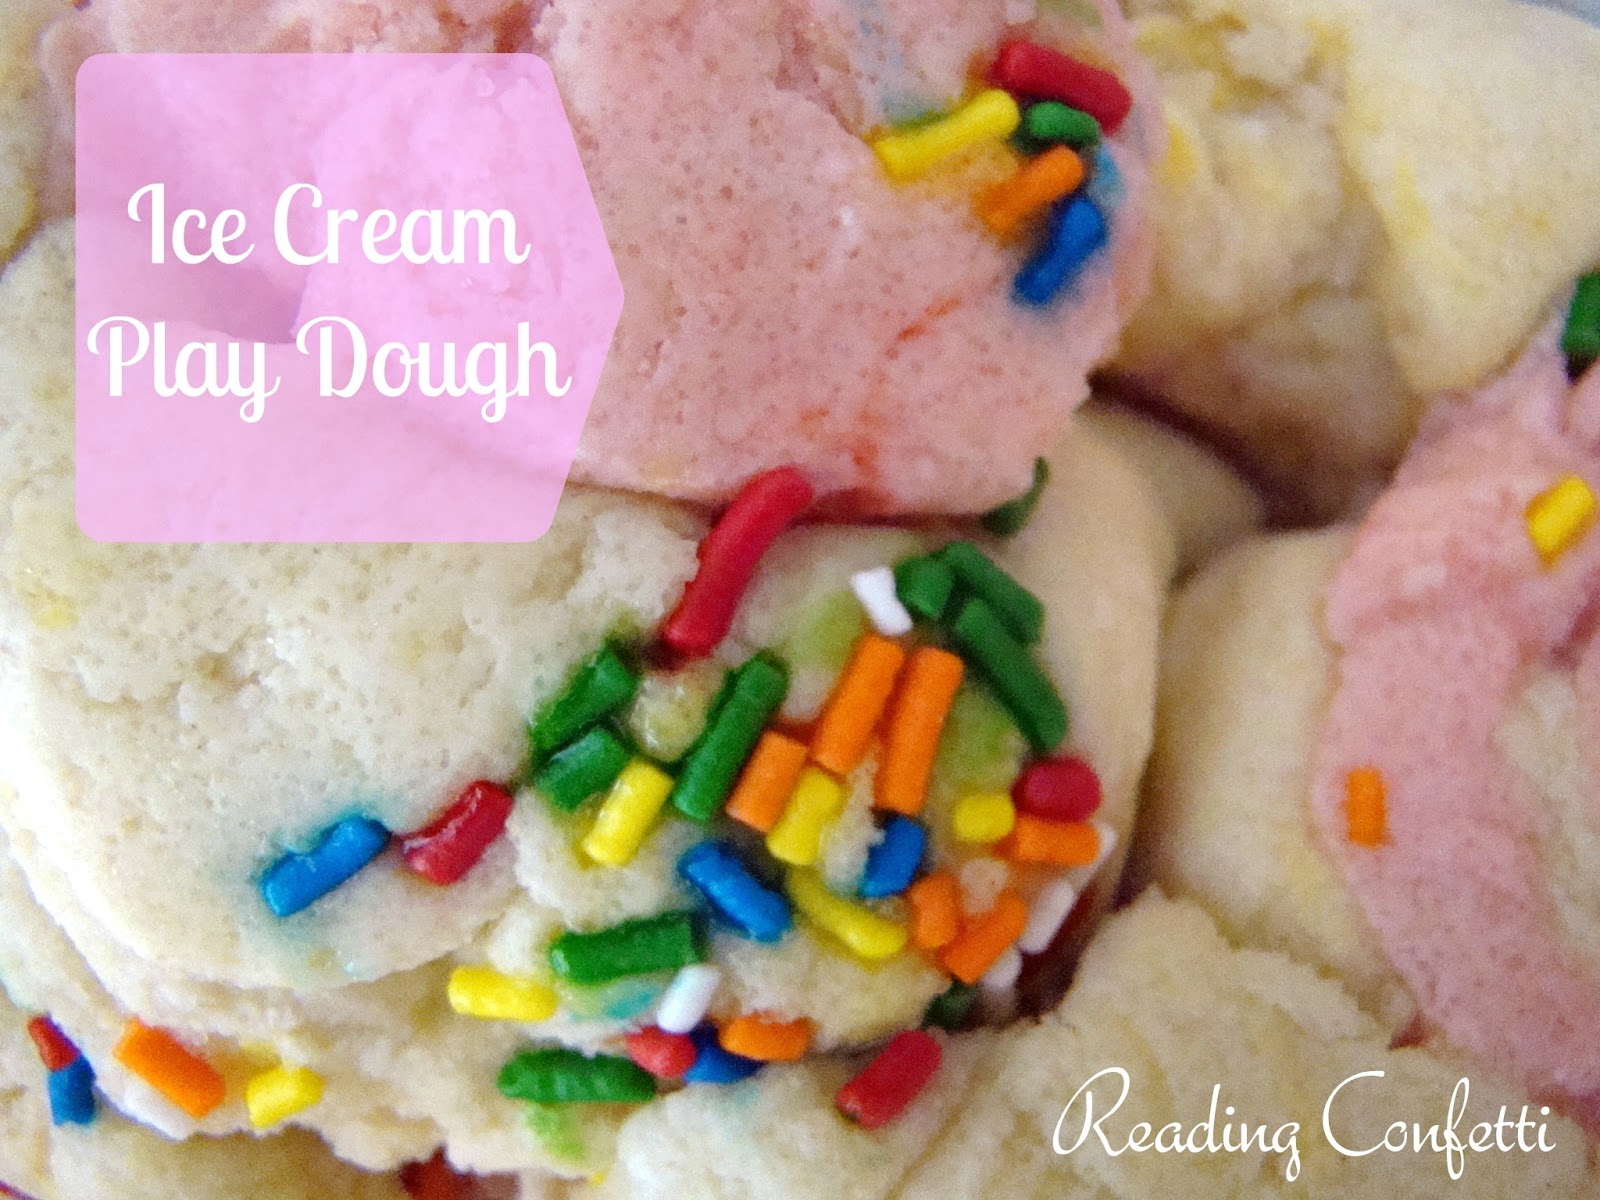 ice-cream-play-dough-reading-confetti